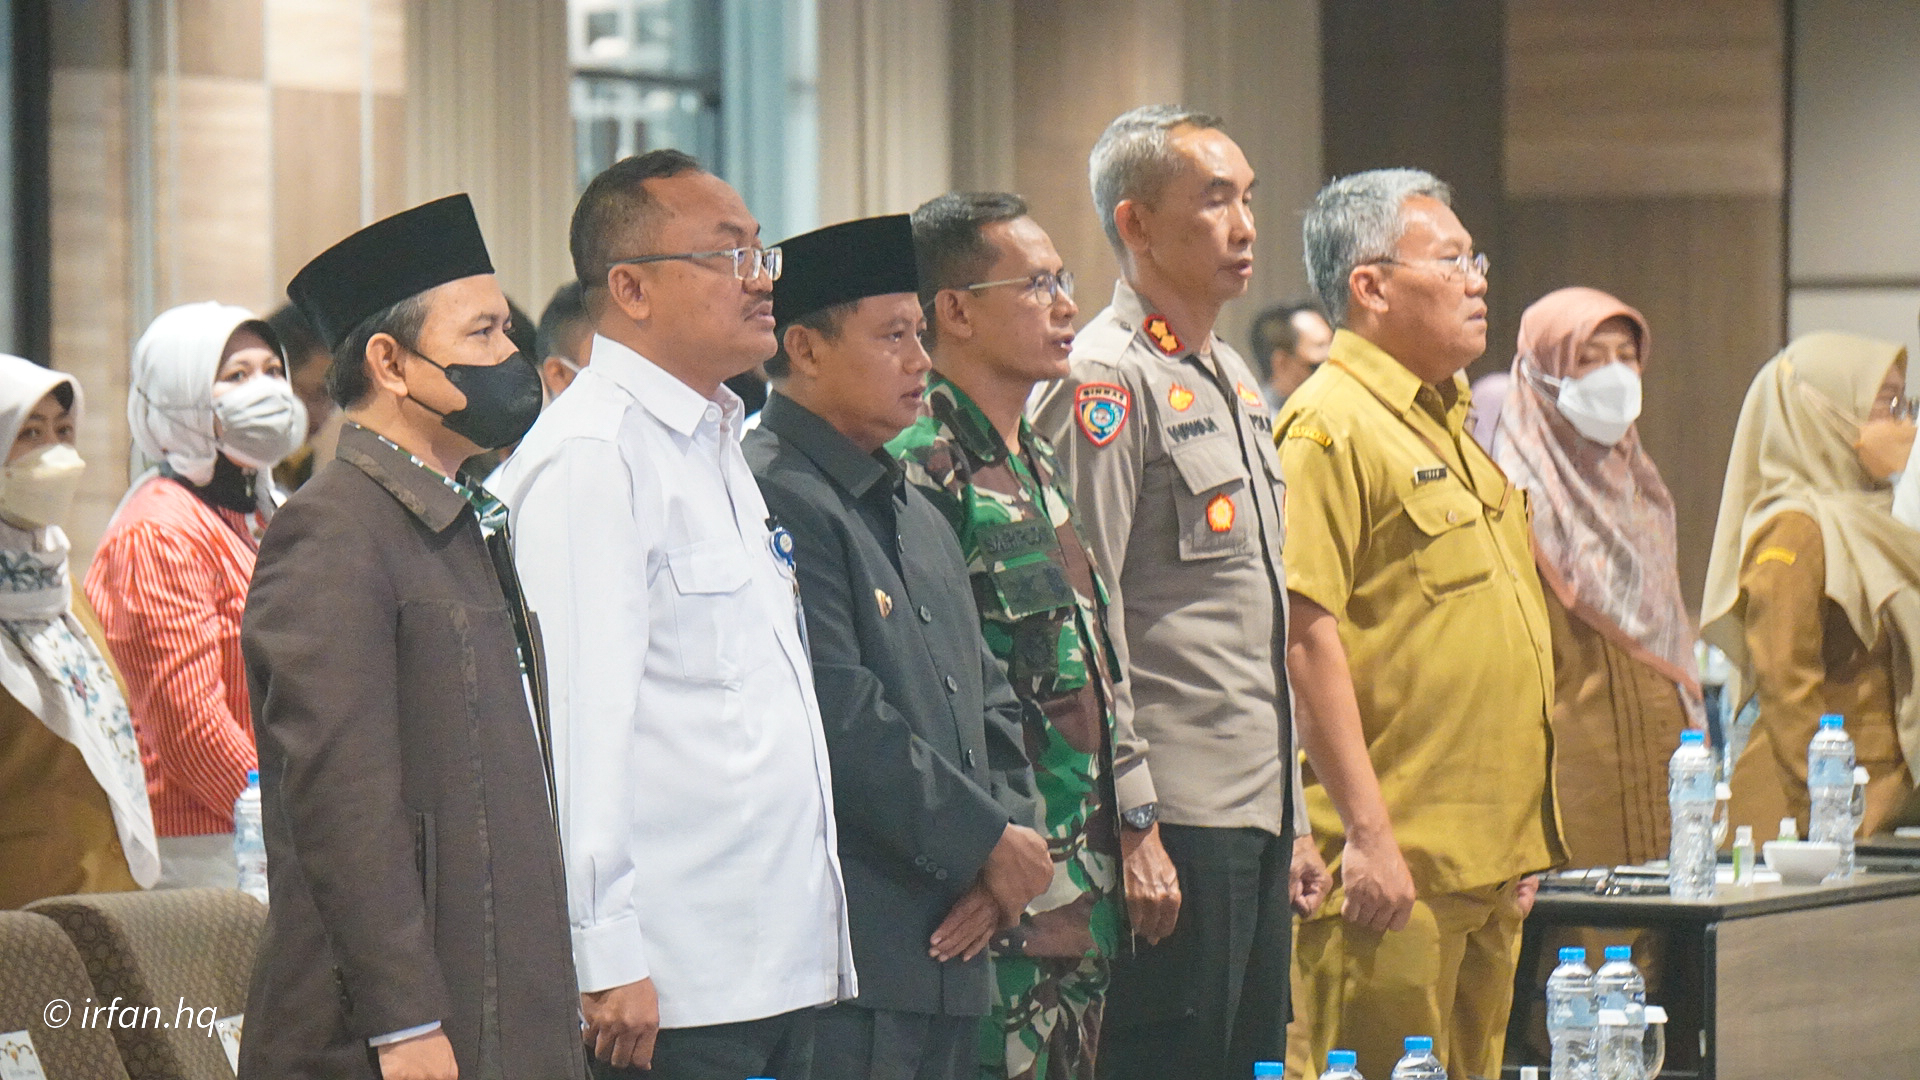 Rapat Konsolidasi Tim Percepatan Penurunan Stunting Tk. Provinsi Jawa Barat